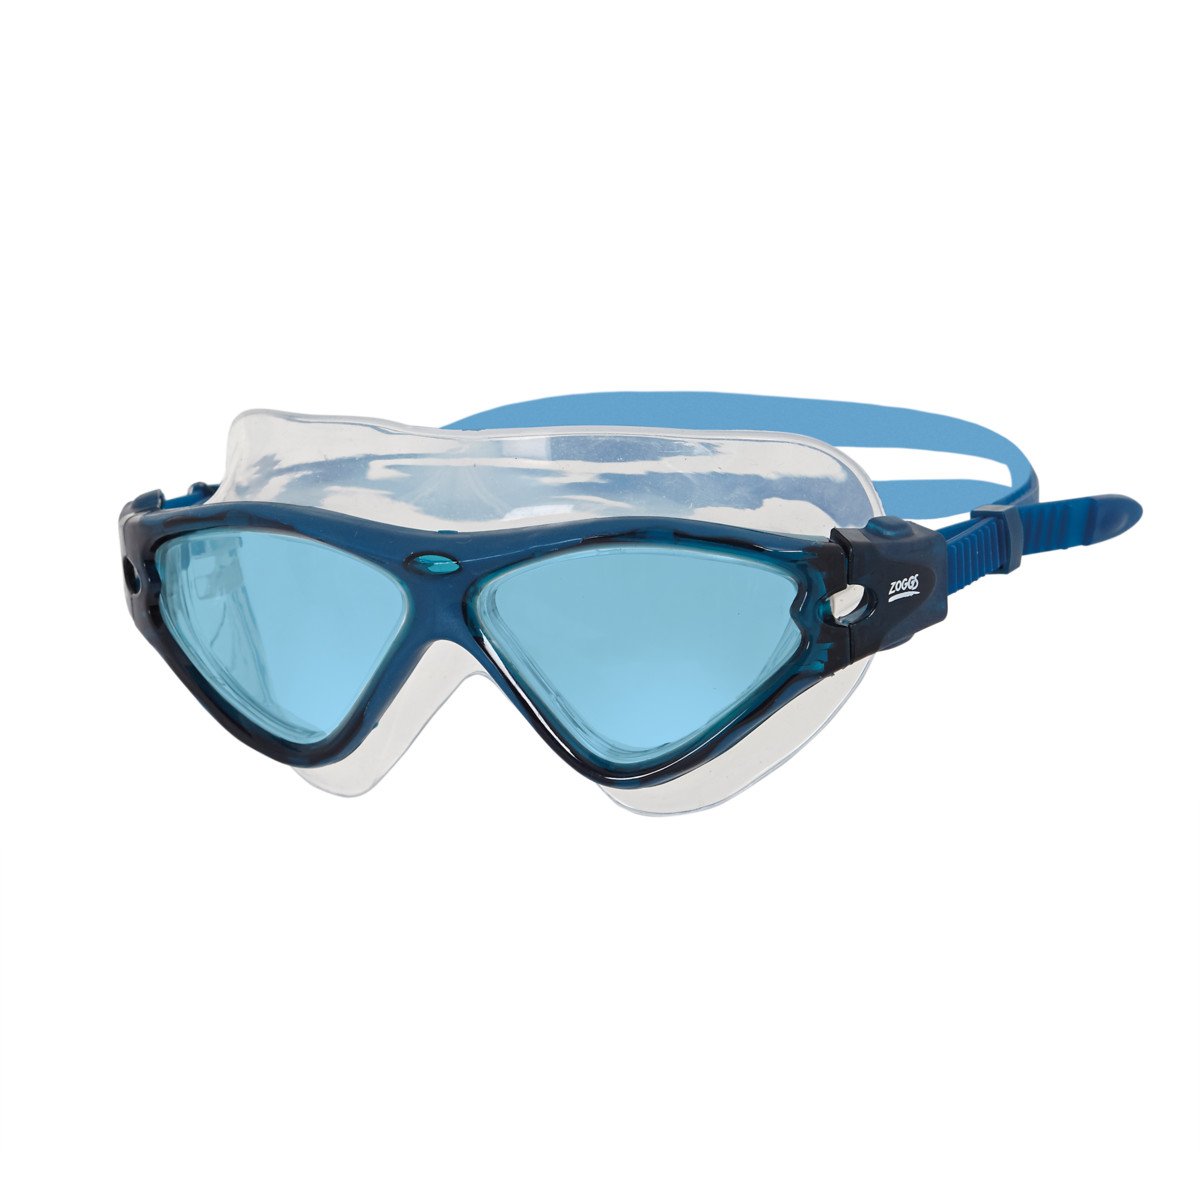 Gafas De Natación Tri-vision Mask Zoggs - azul - 